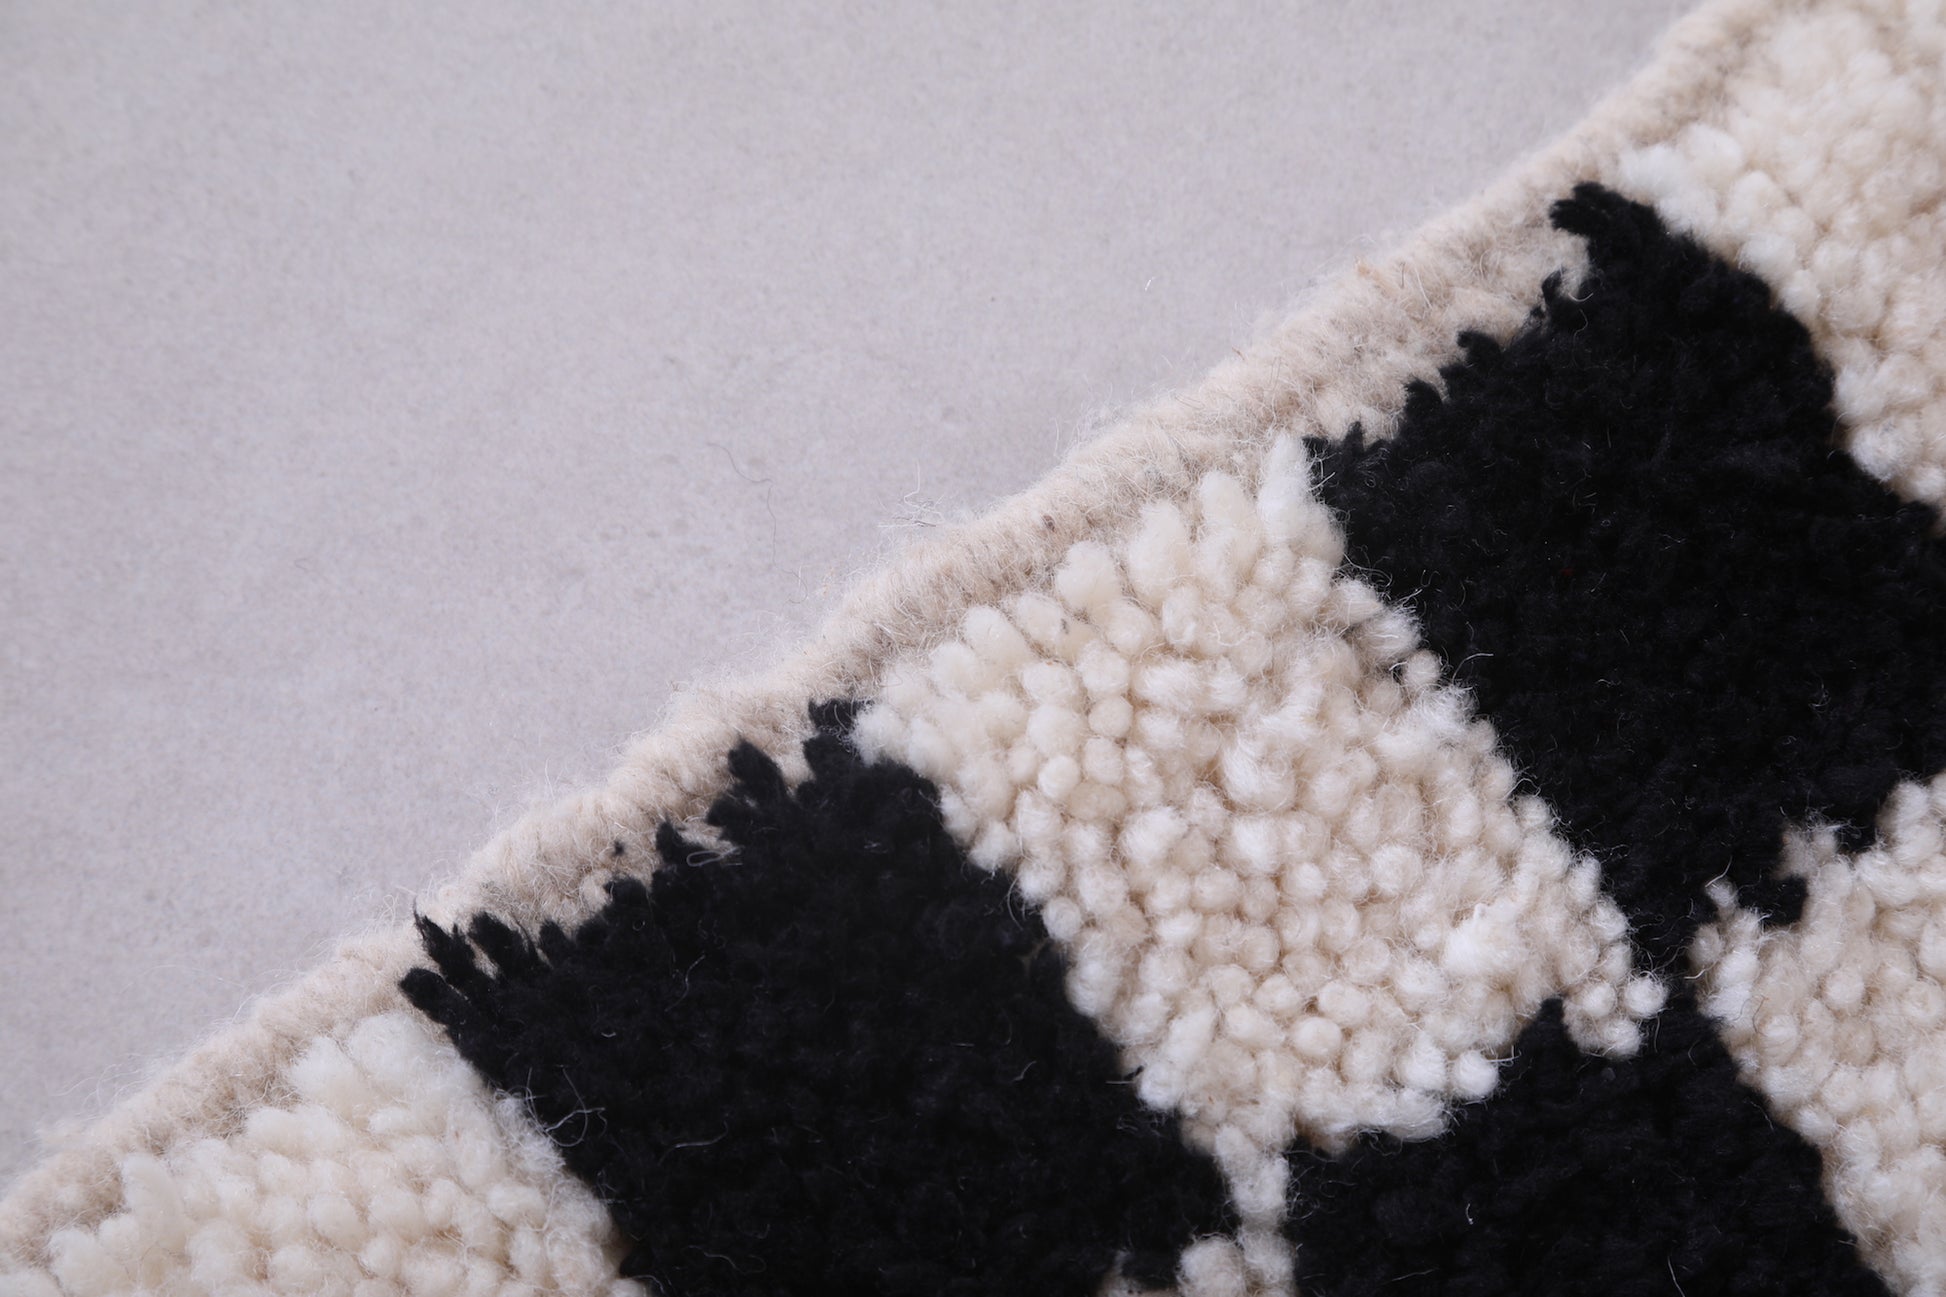 Runner handmade rug - custom moroccan carpet